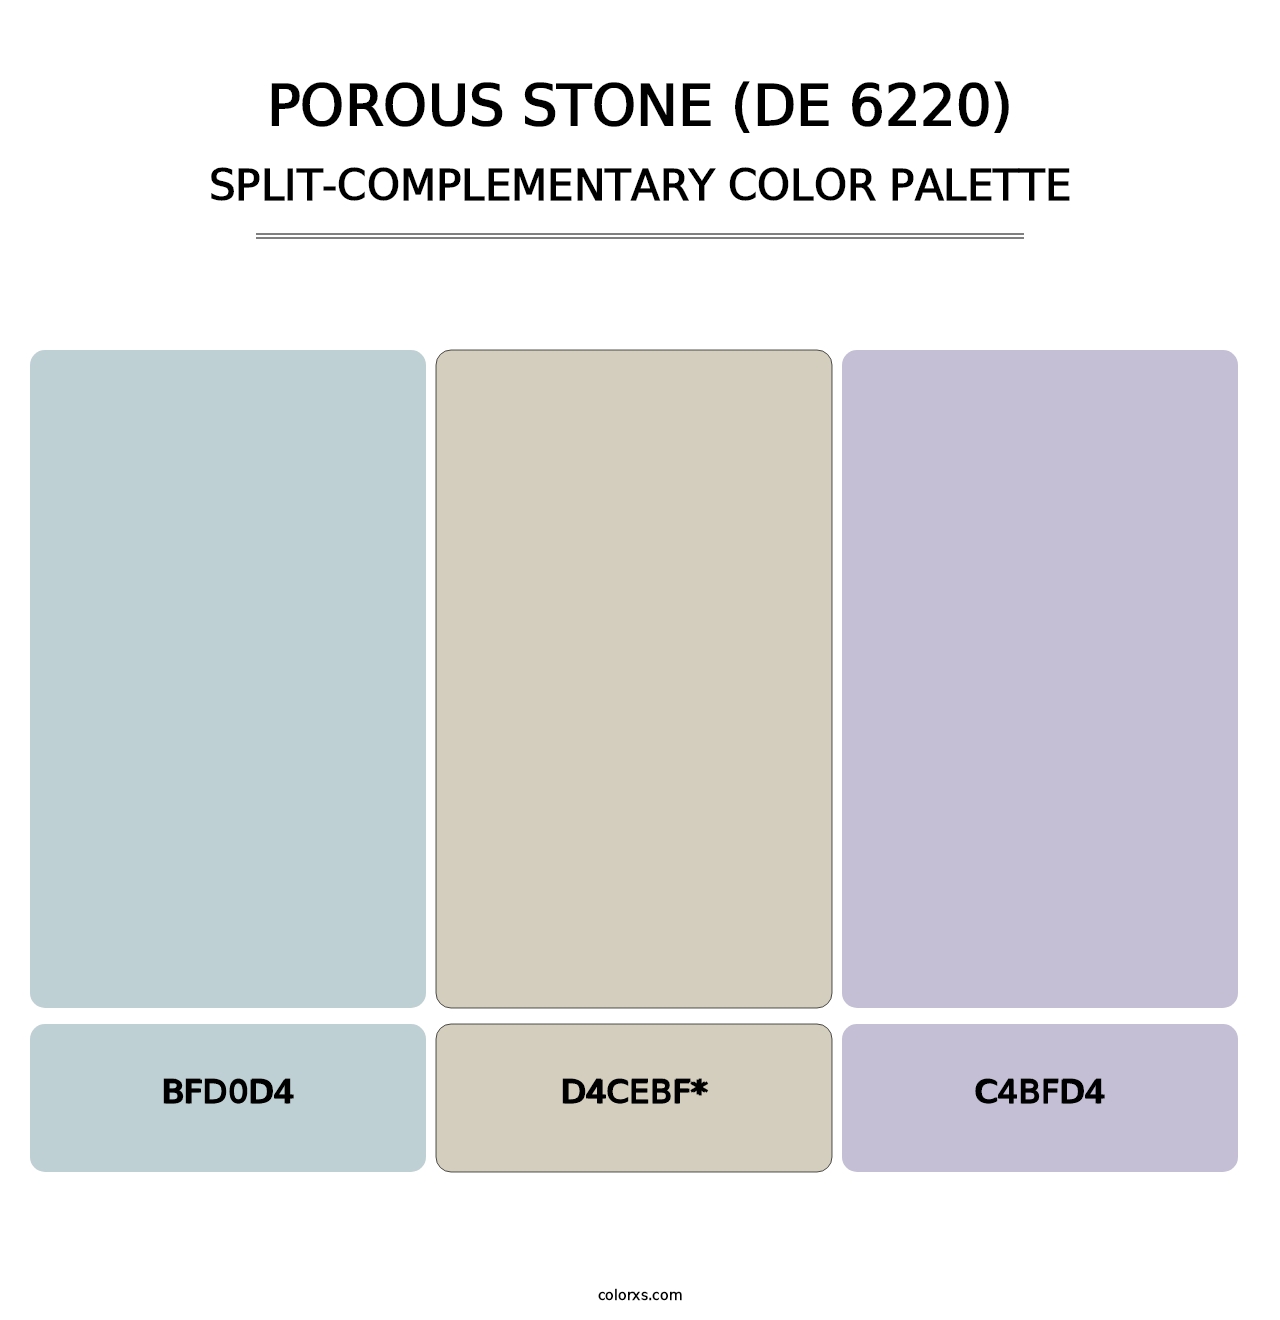 Porous Stone (DE 6220) - Split-Complementary Color Palette